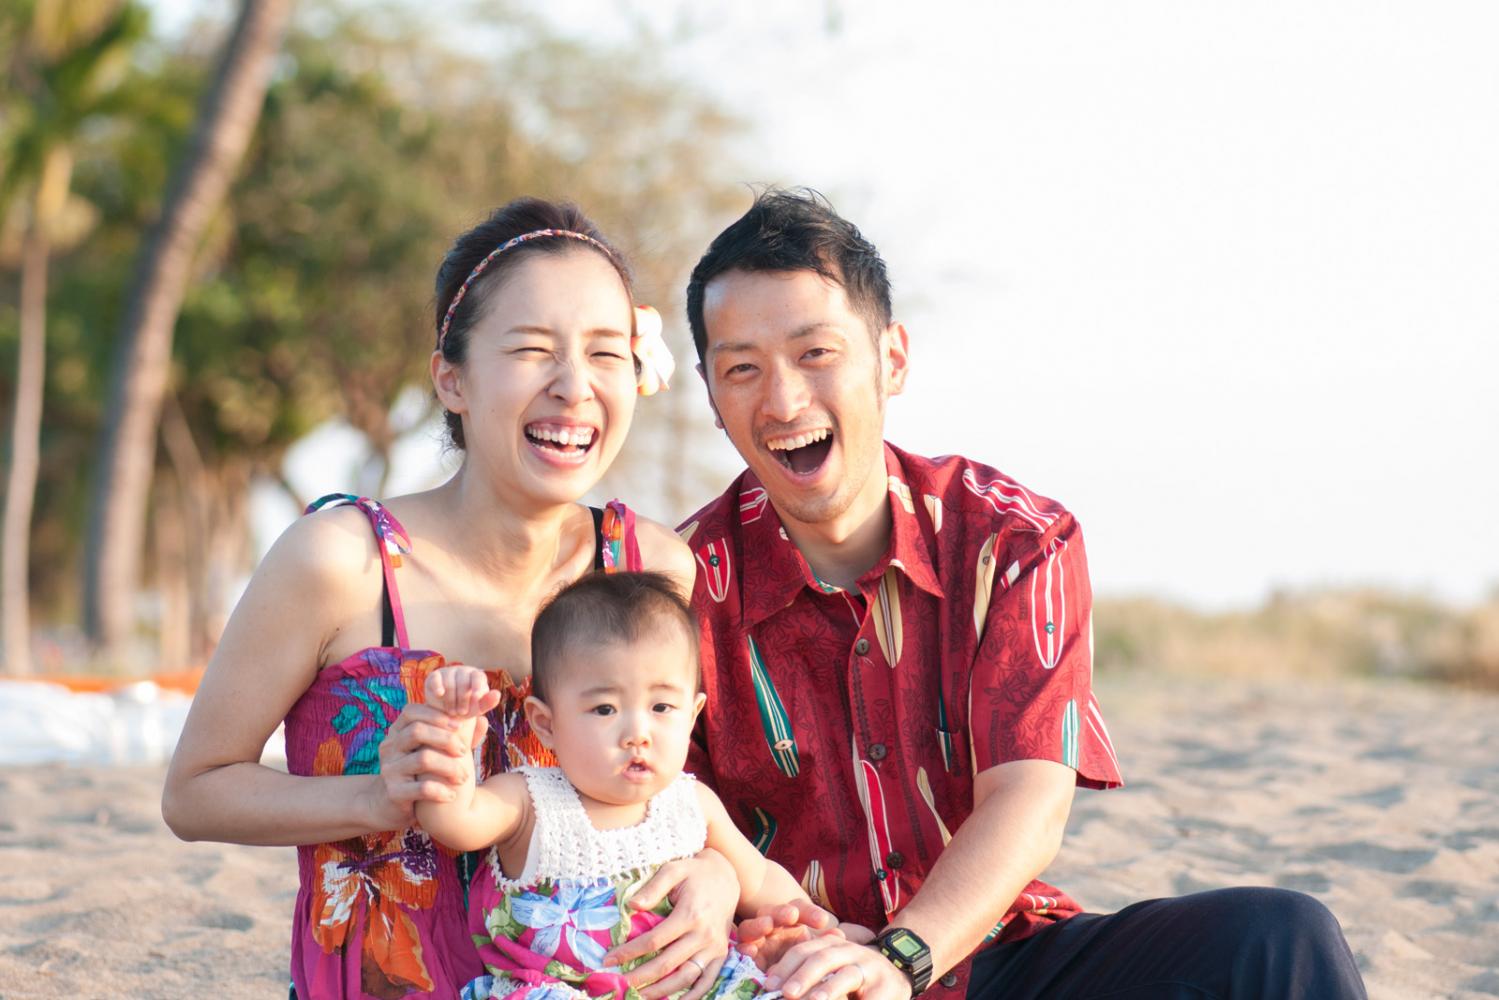 マウイ日本人フォトグラファー、家族写真